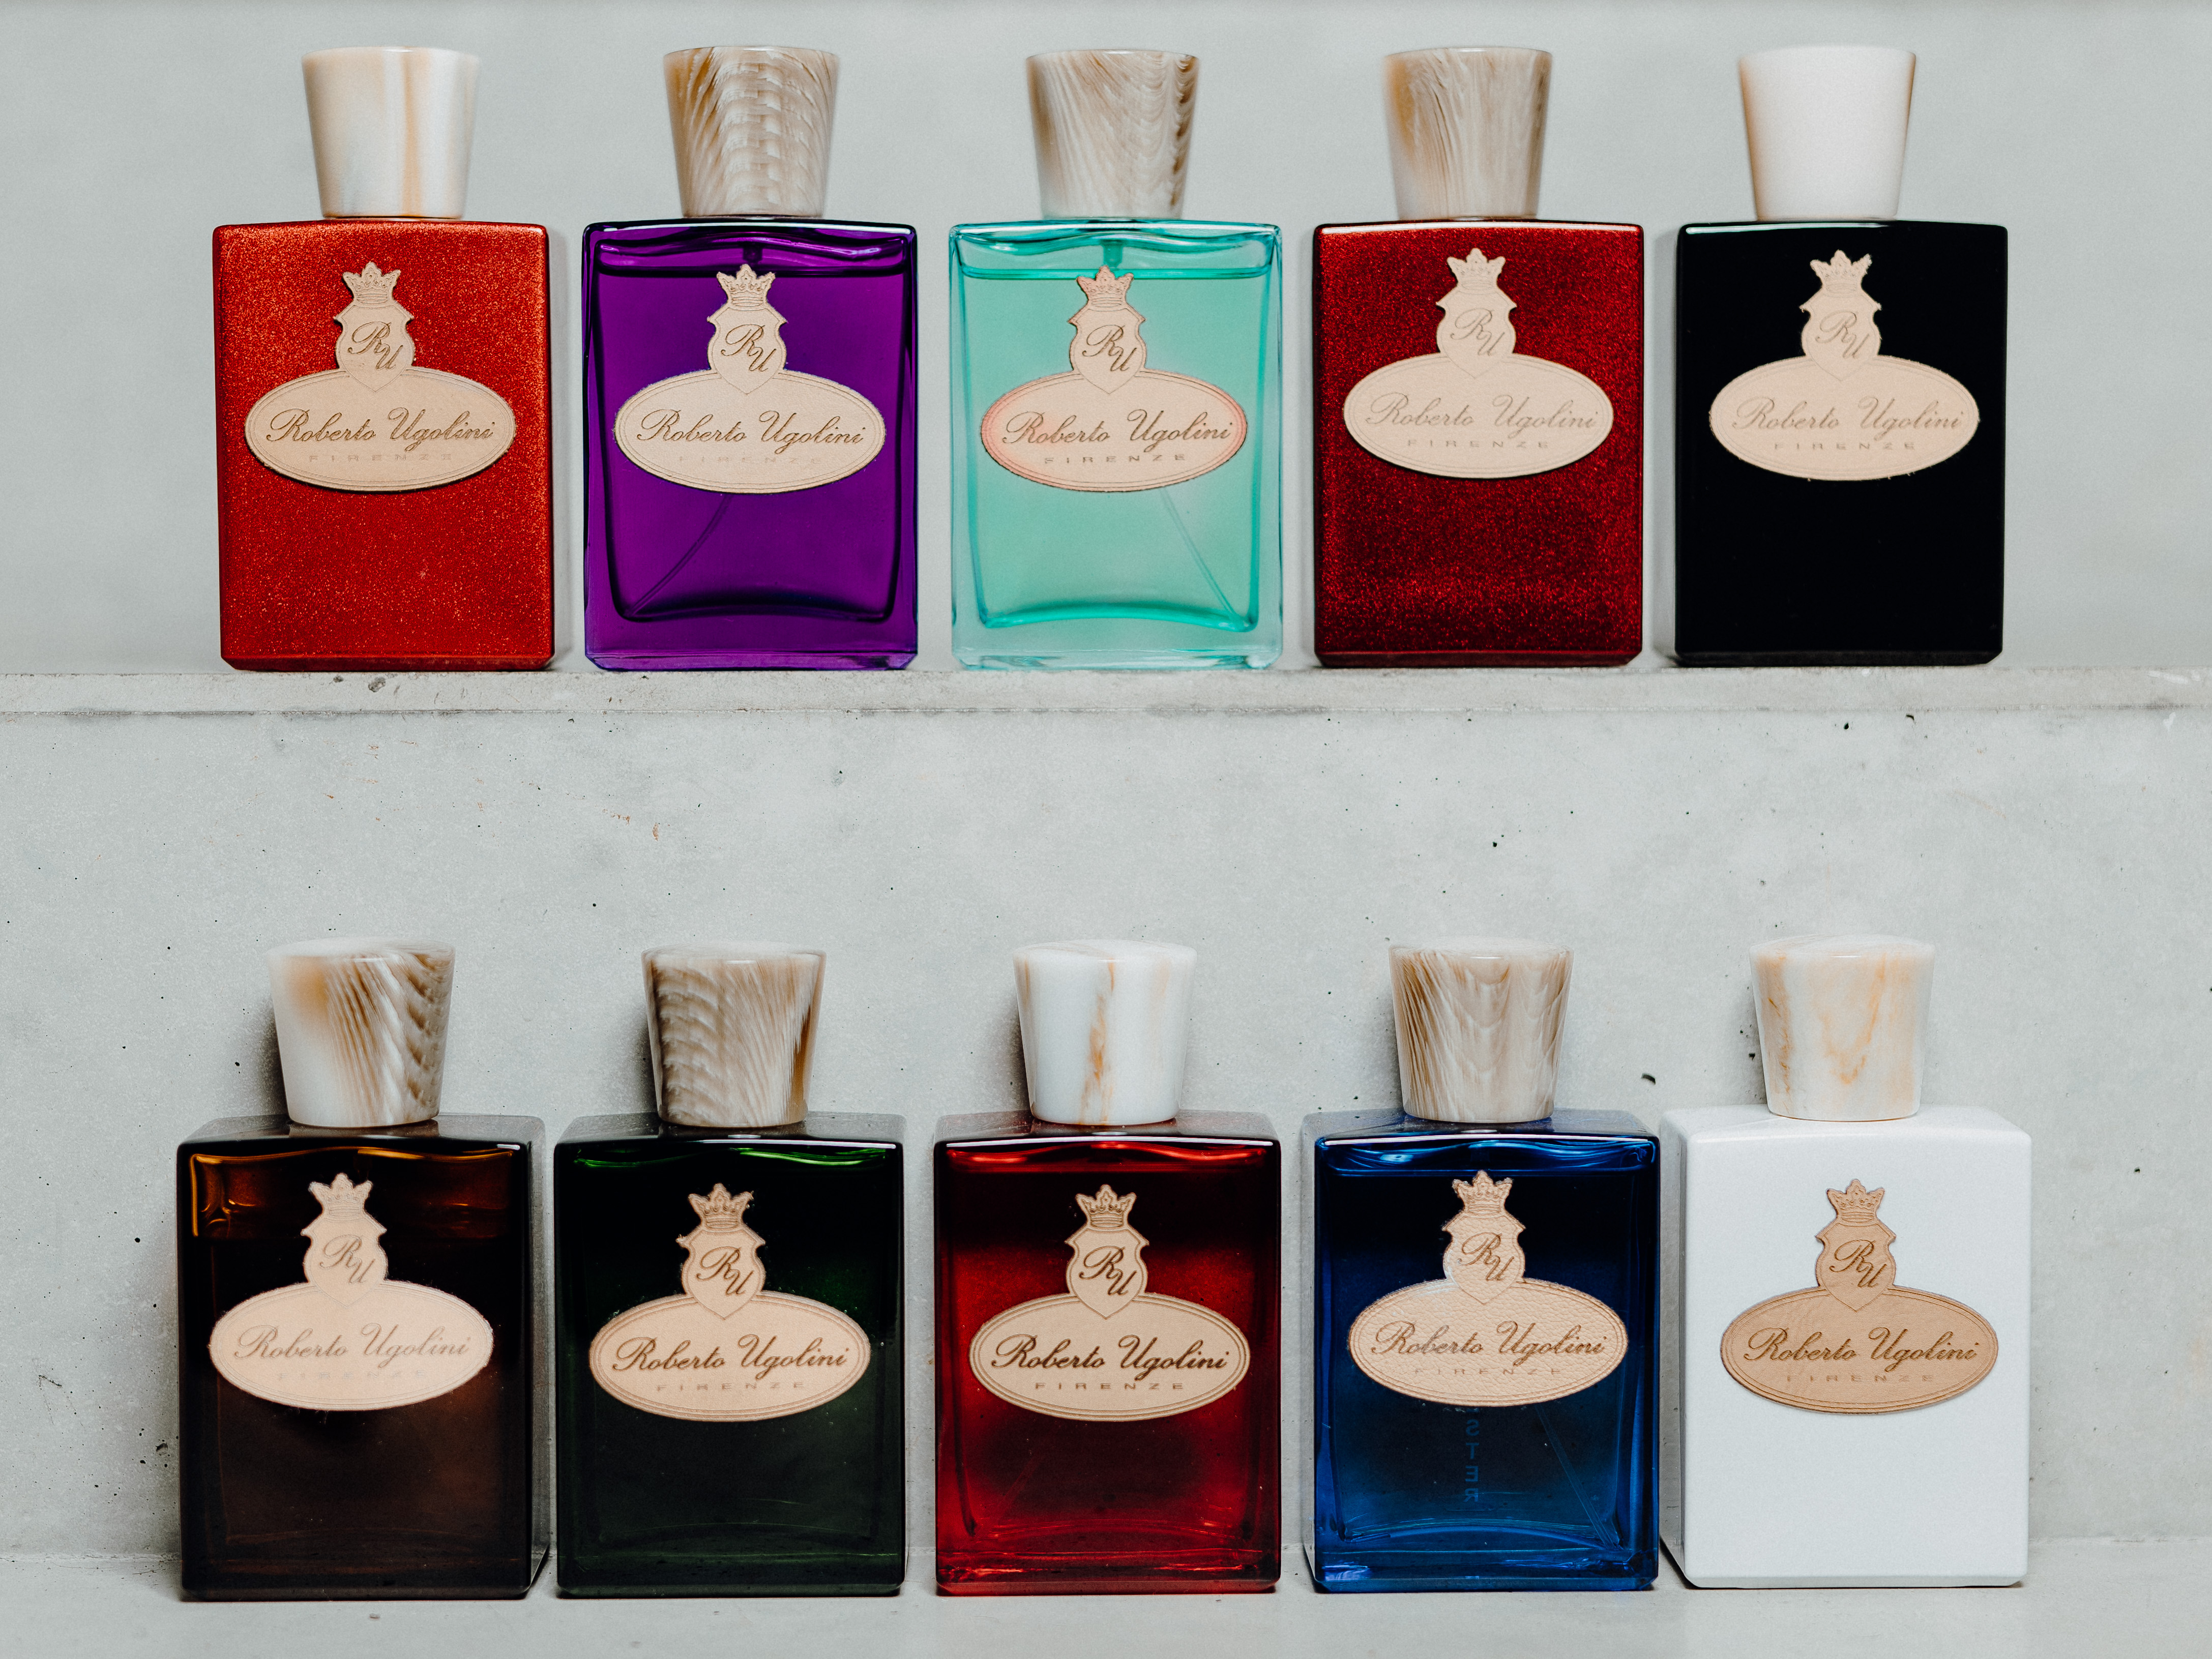 10 Roberto Ugolini Fragrance bottles on shelf